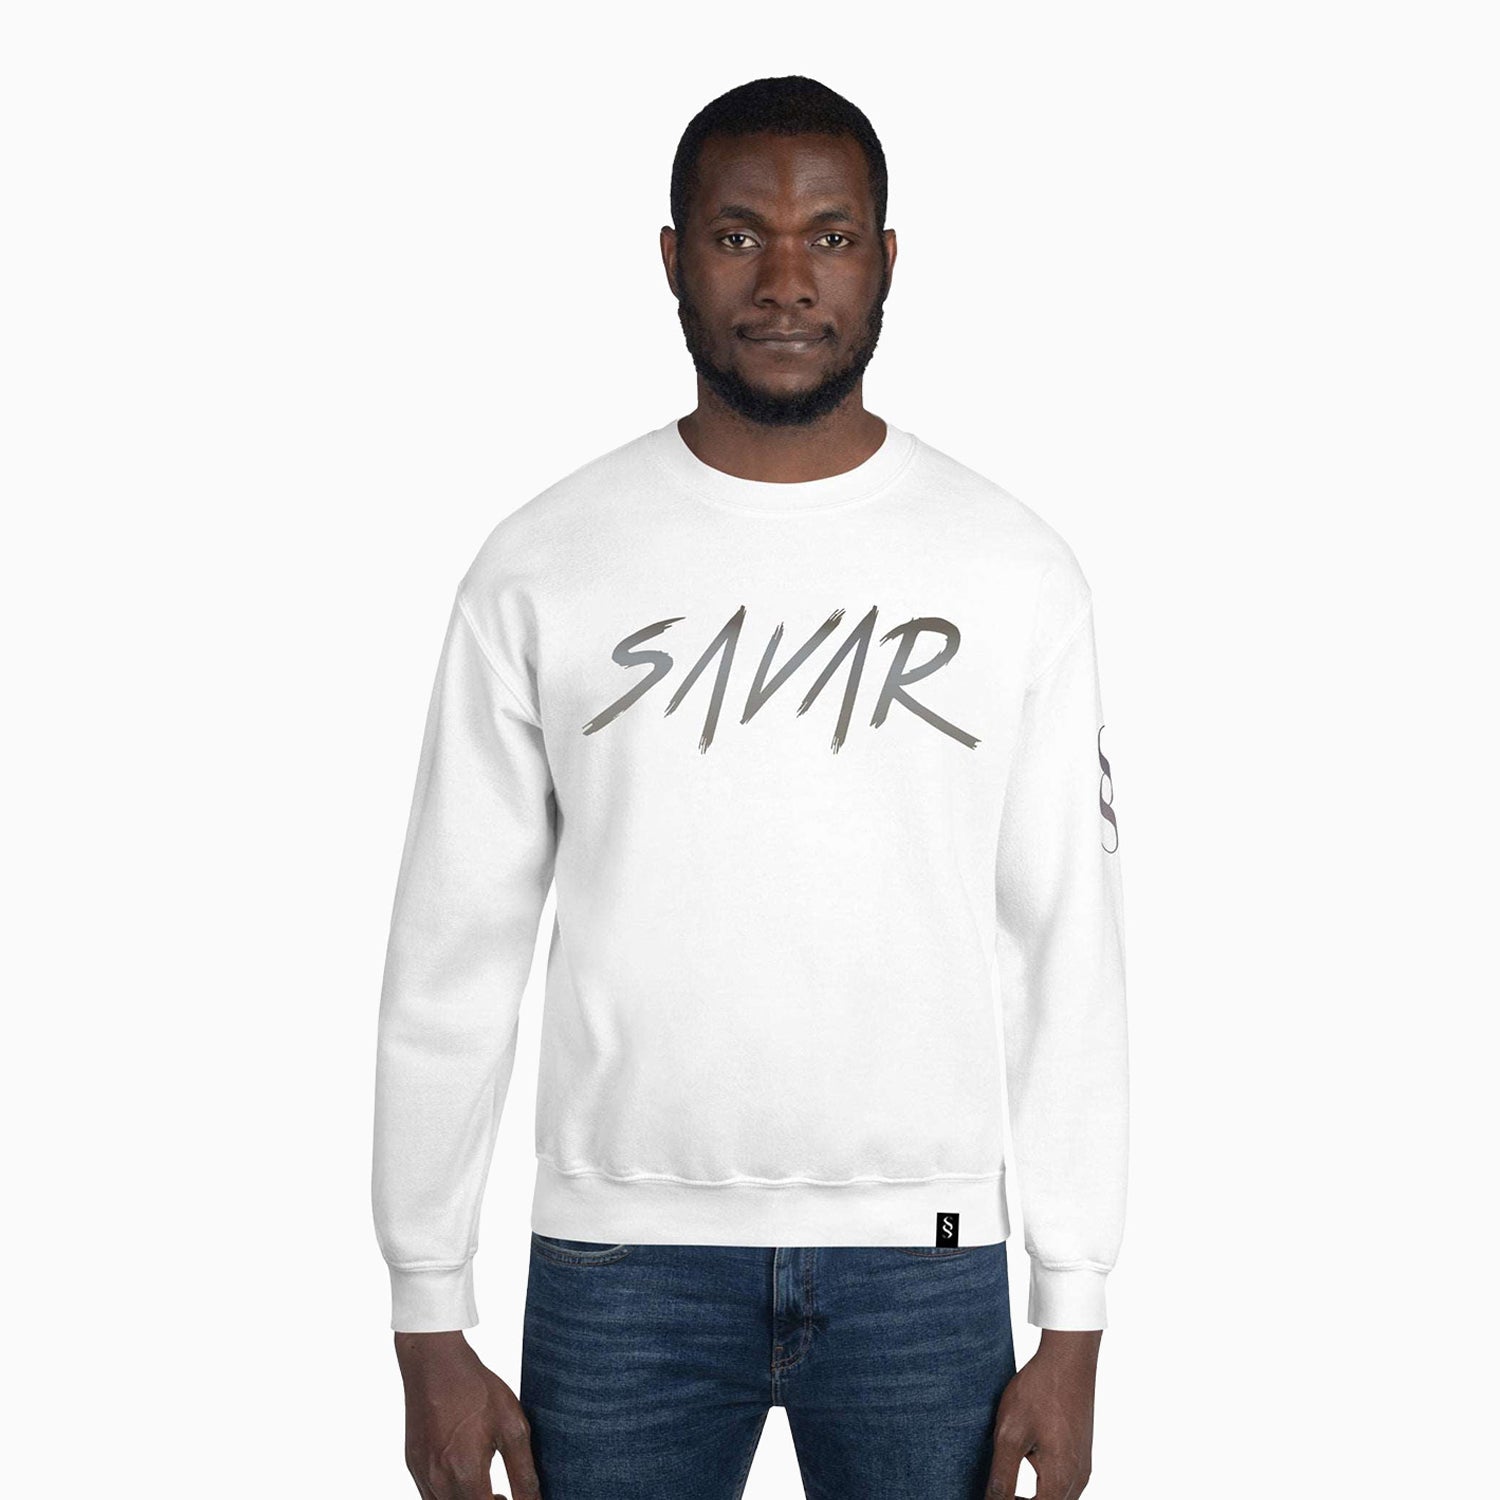 signature-design-printed-crew-neck-white-sweatshirt-for-men-sc111-100